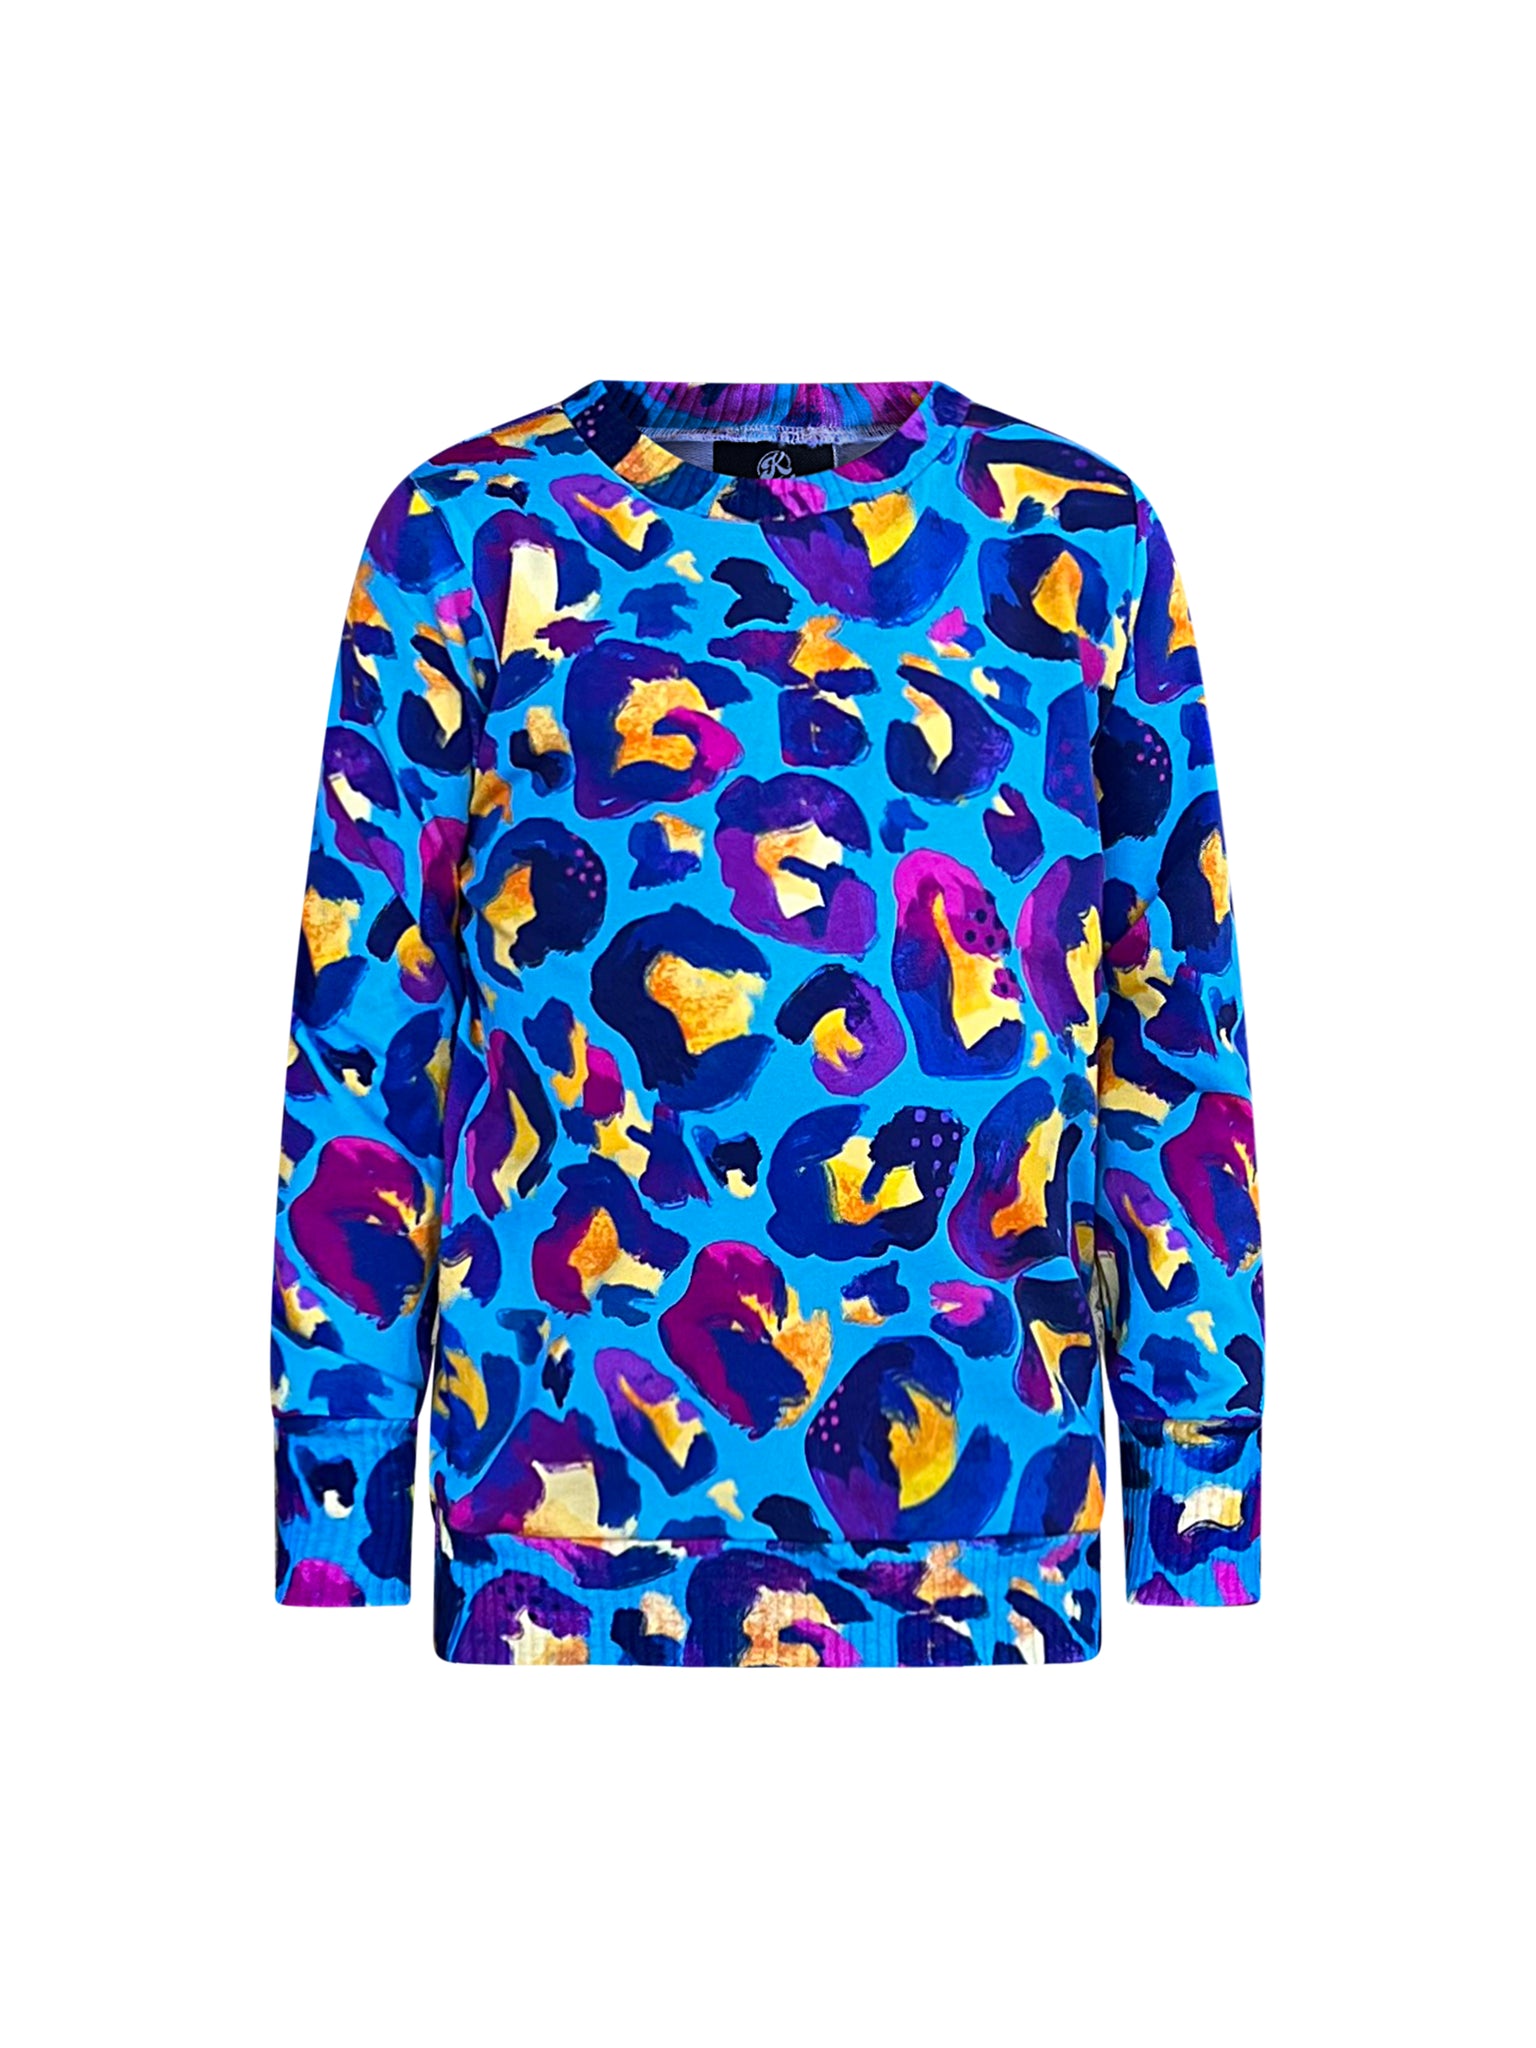 Kids Sweatshirt in 'Blue Leopard' - Kasey Rainbow